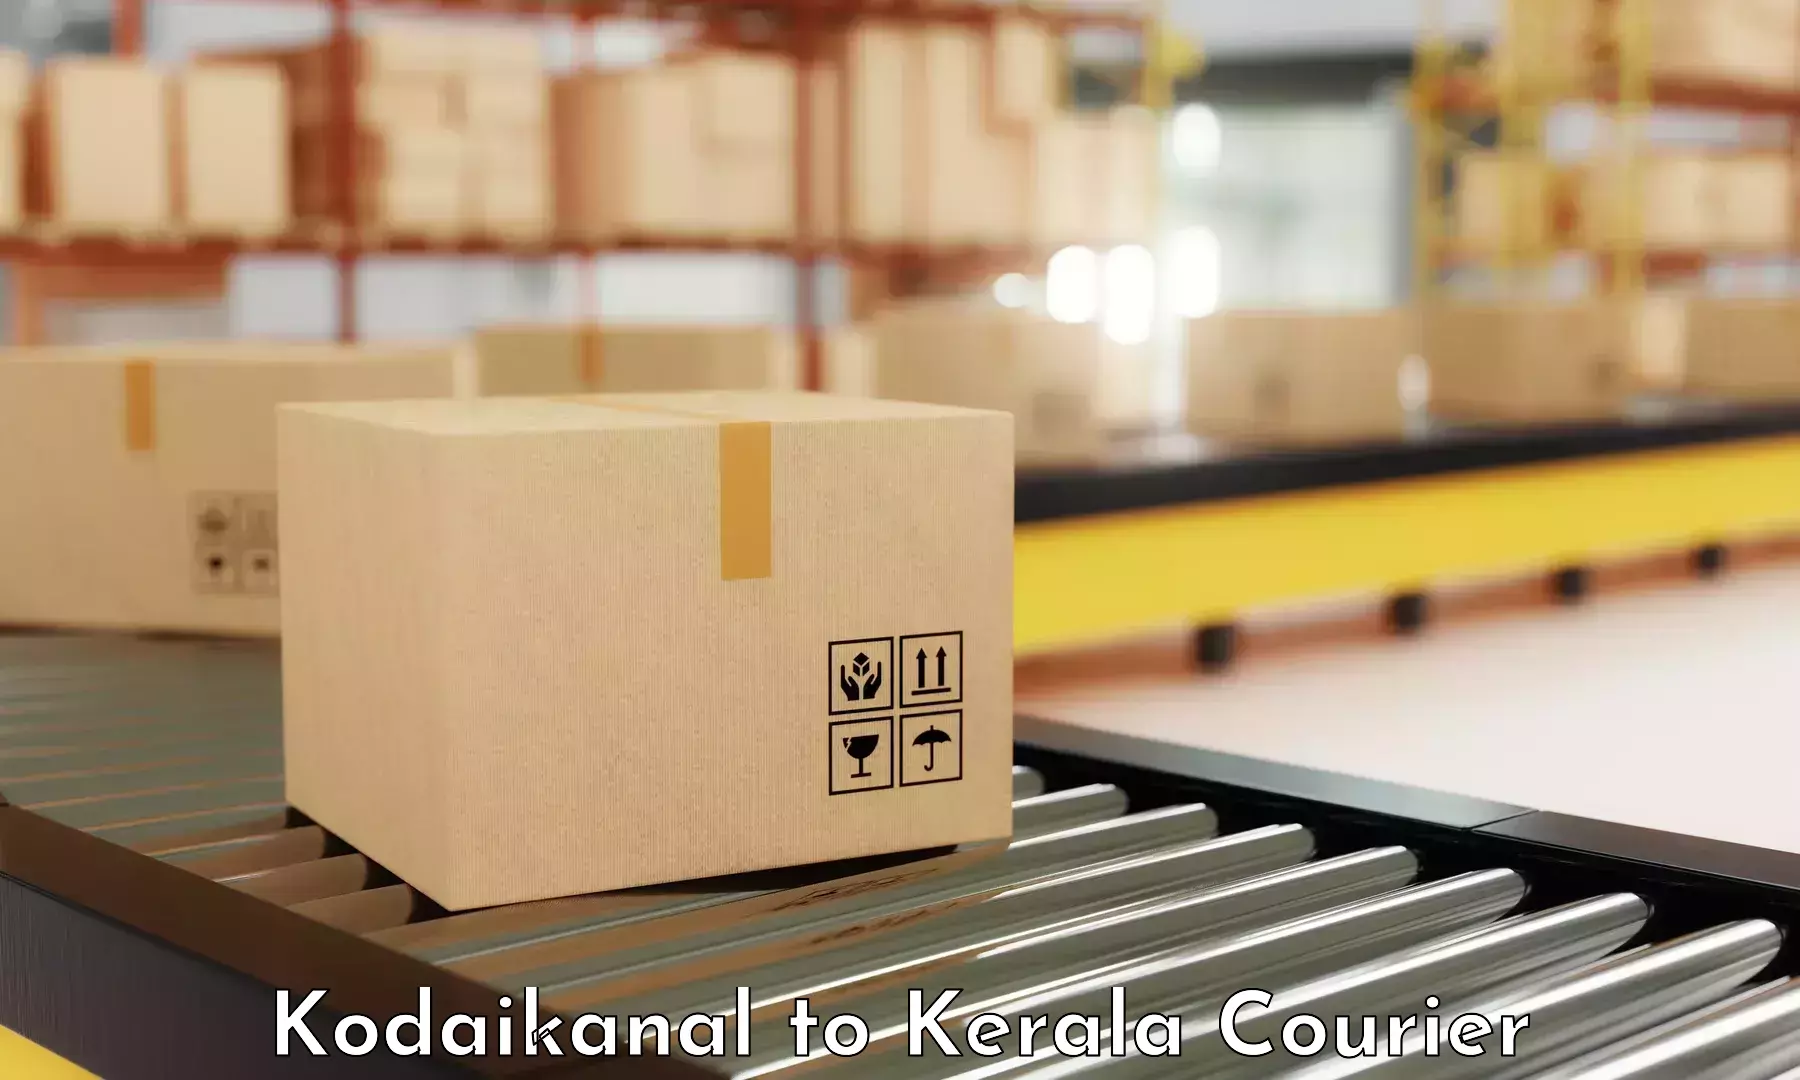 Enhanced tracking features Kodaikanal to IIT Palakkad